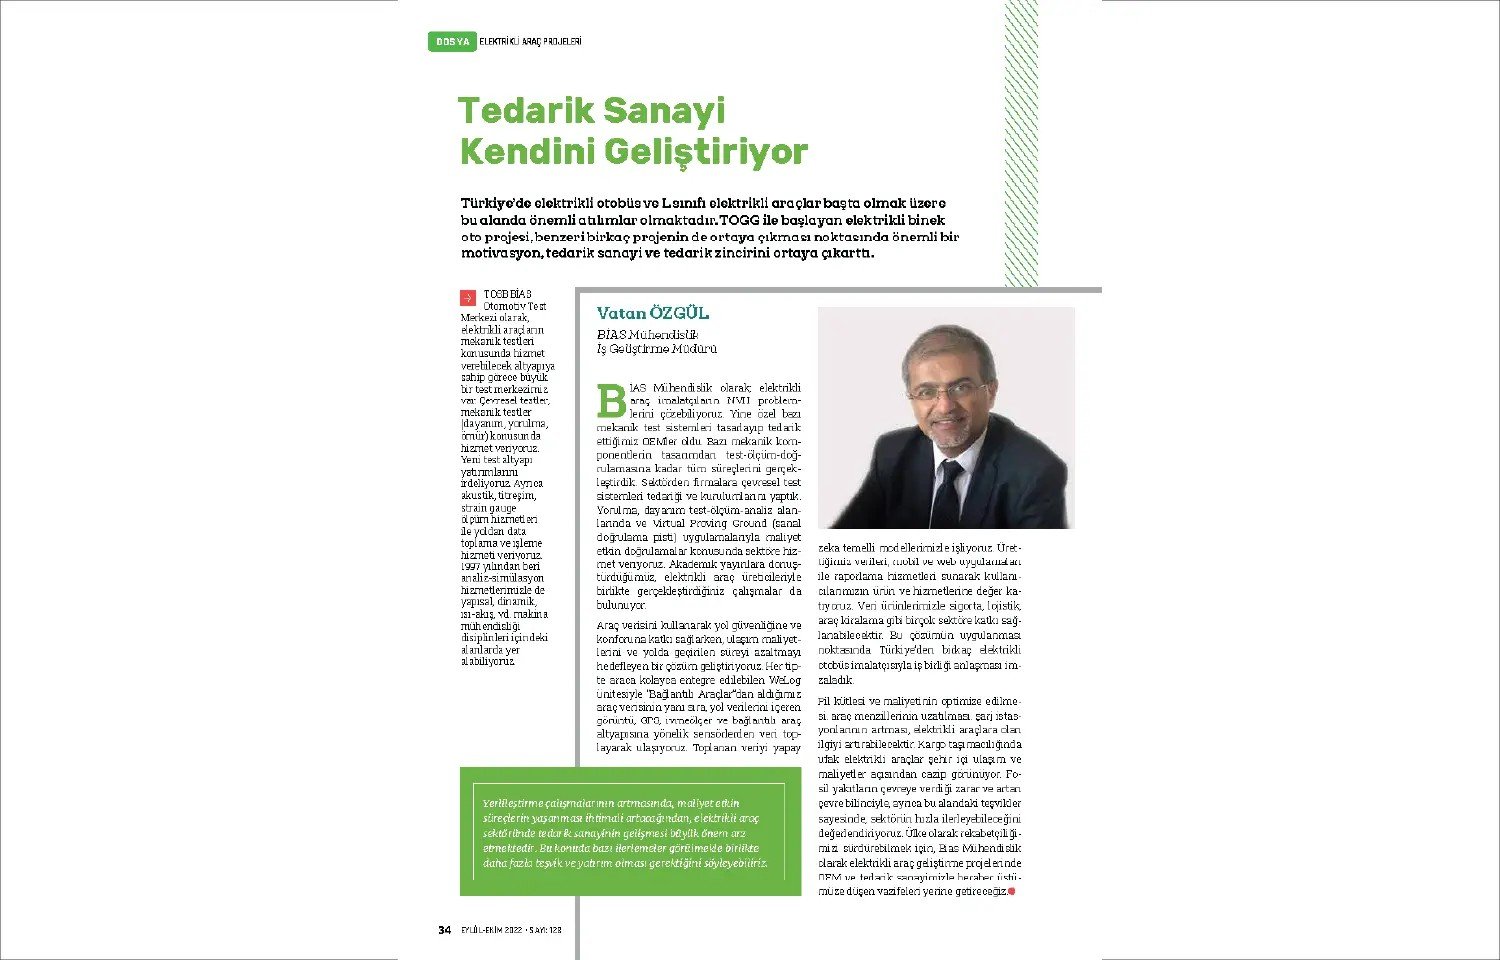 İş Geliştirme Müdürü'müz Vatan Özgül'ün TAYSAD Dergisinde Röportajı Yayınlandı